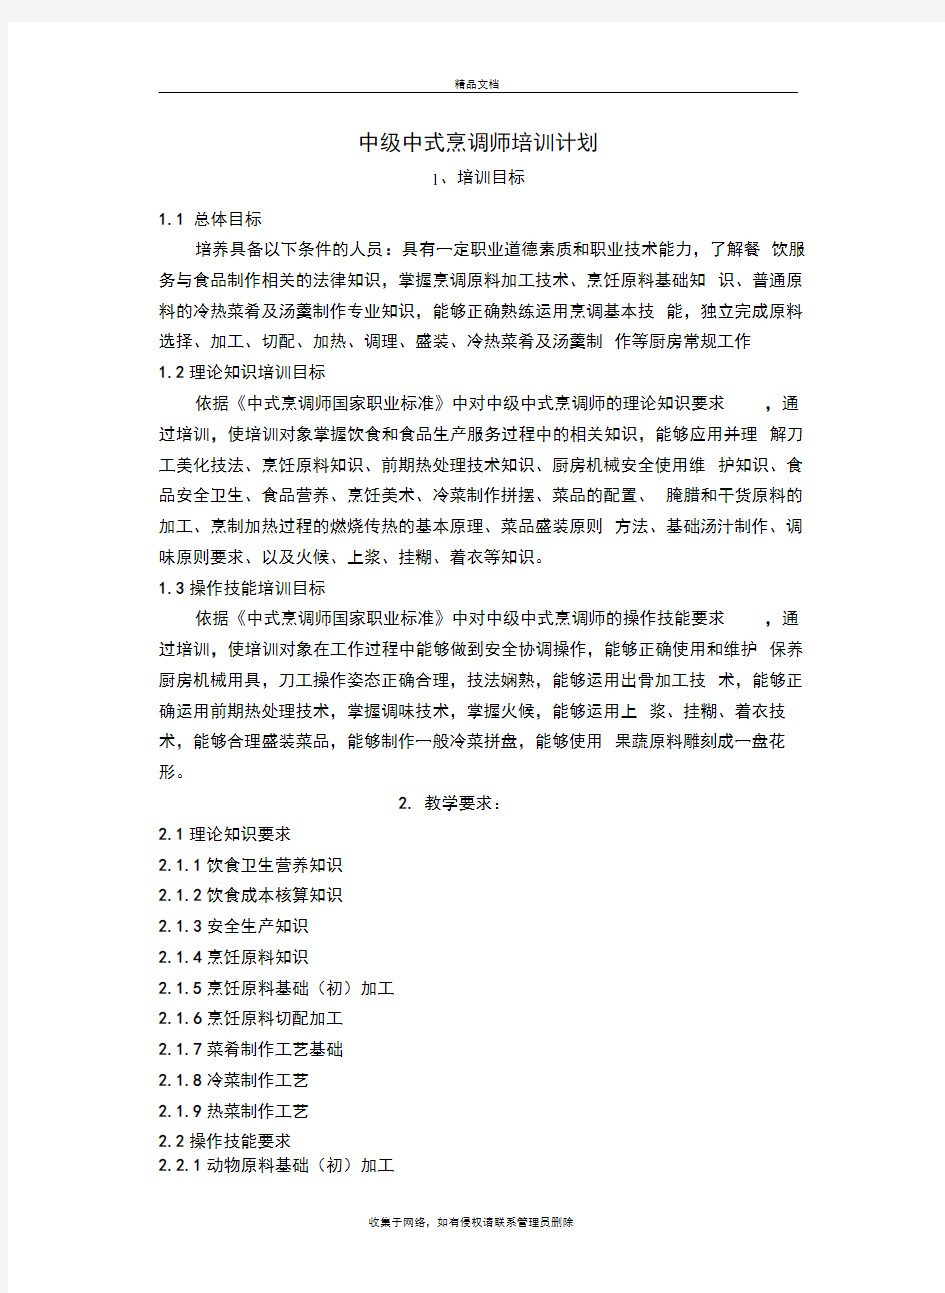 中式烹调师中级教学计划大纲教学文稿